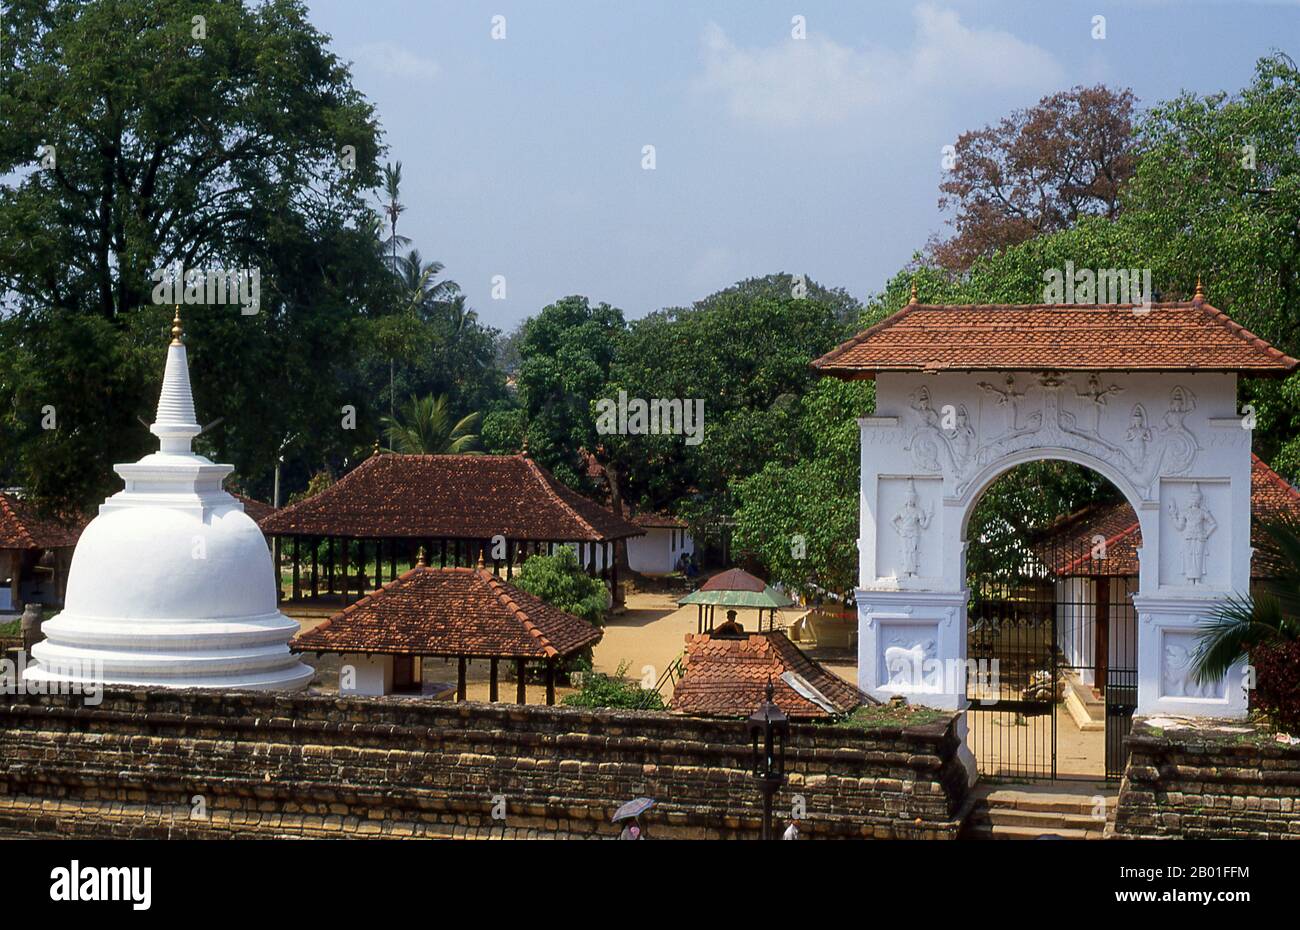 Sri Lanka: Sri Dalada Maligawa oder der Zahntempel, Kandy. Sri Dalada Maligawa oder der Tempel des Heiligen Zahns befindet sich im königlichen Palastkomplex und beherbergt das Relikt des Zahns von Buddha. Seit der Antike spielt das Relikt eine wichtige Rolle in der lokalen Politik, weil man glaubt, dass derjenige, der das Relikt besitzt, die Herrschaft des Landes innehat. Stockfoto